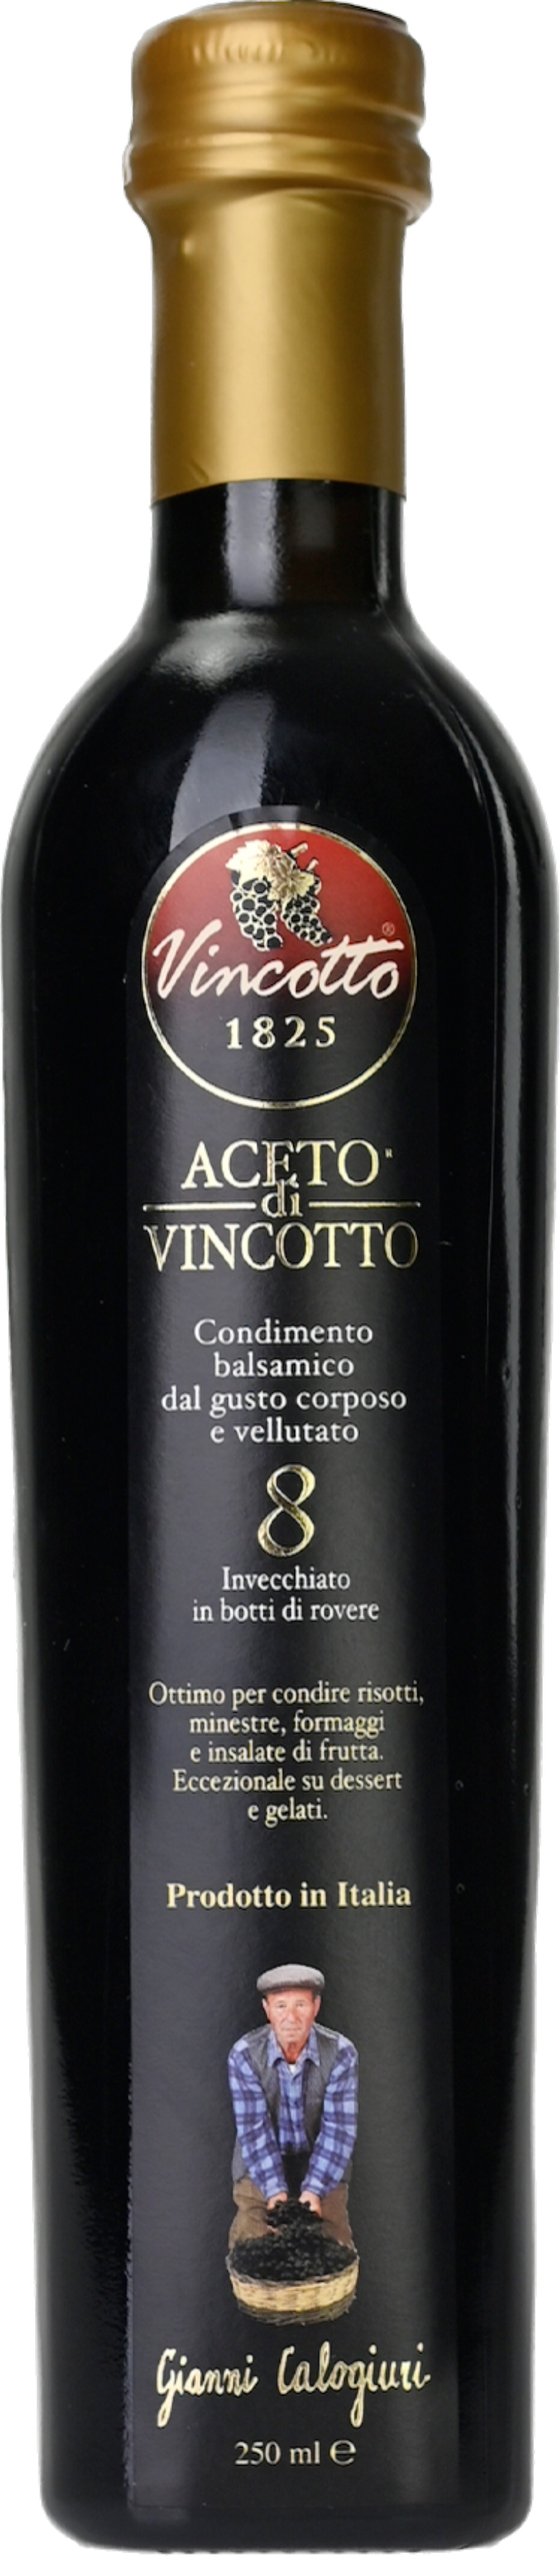 Aceto di Vincotto 8 Years 0,25l Gianni Calogiuri